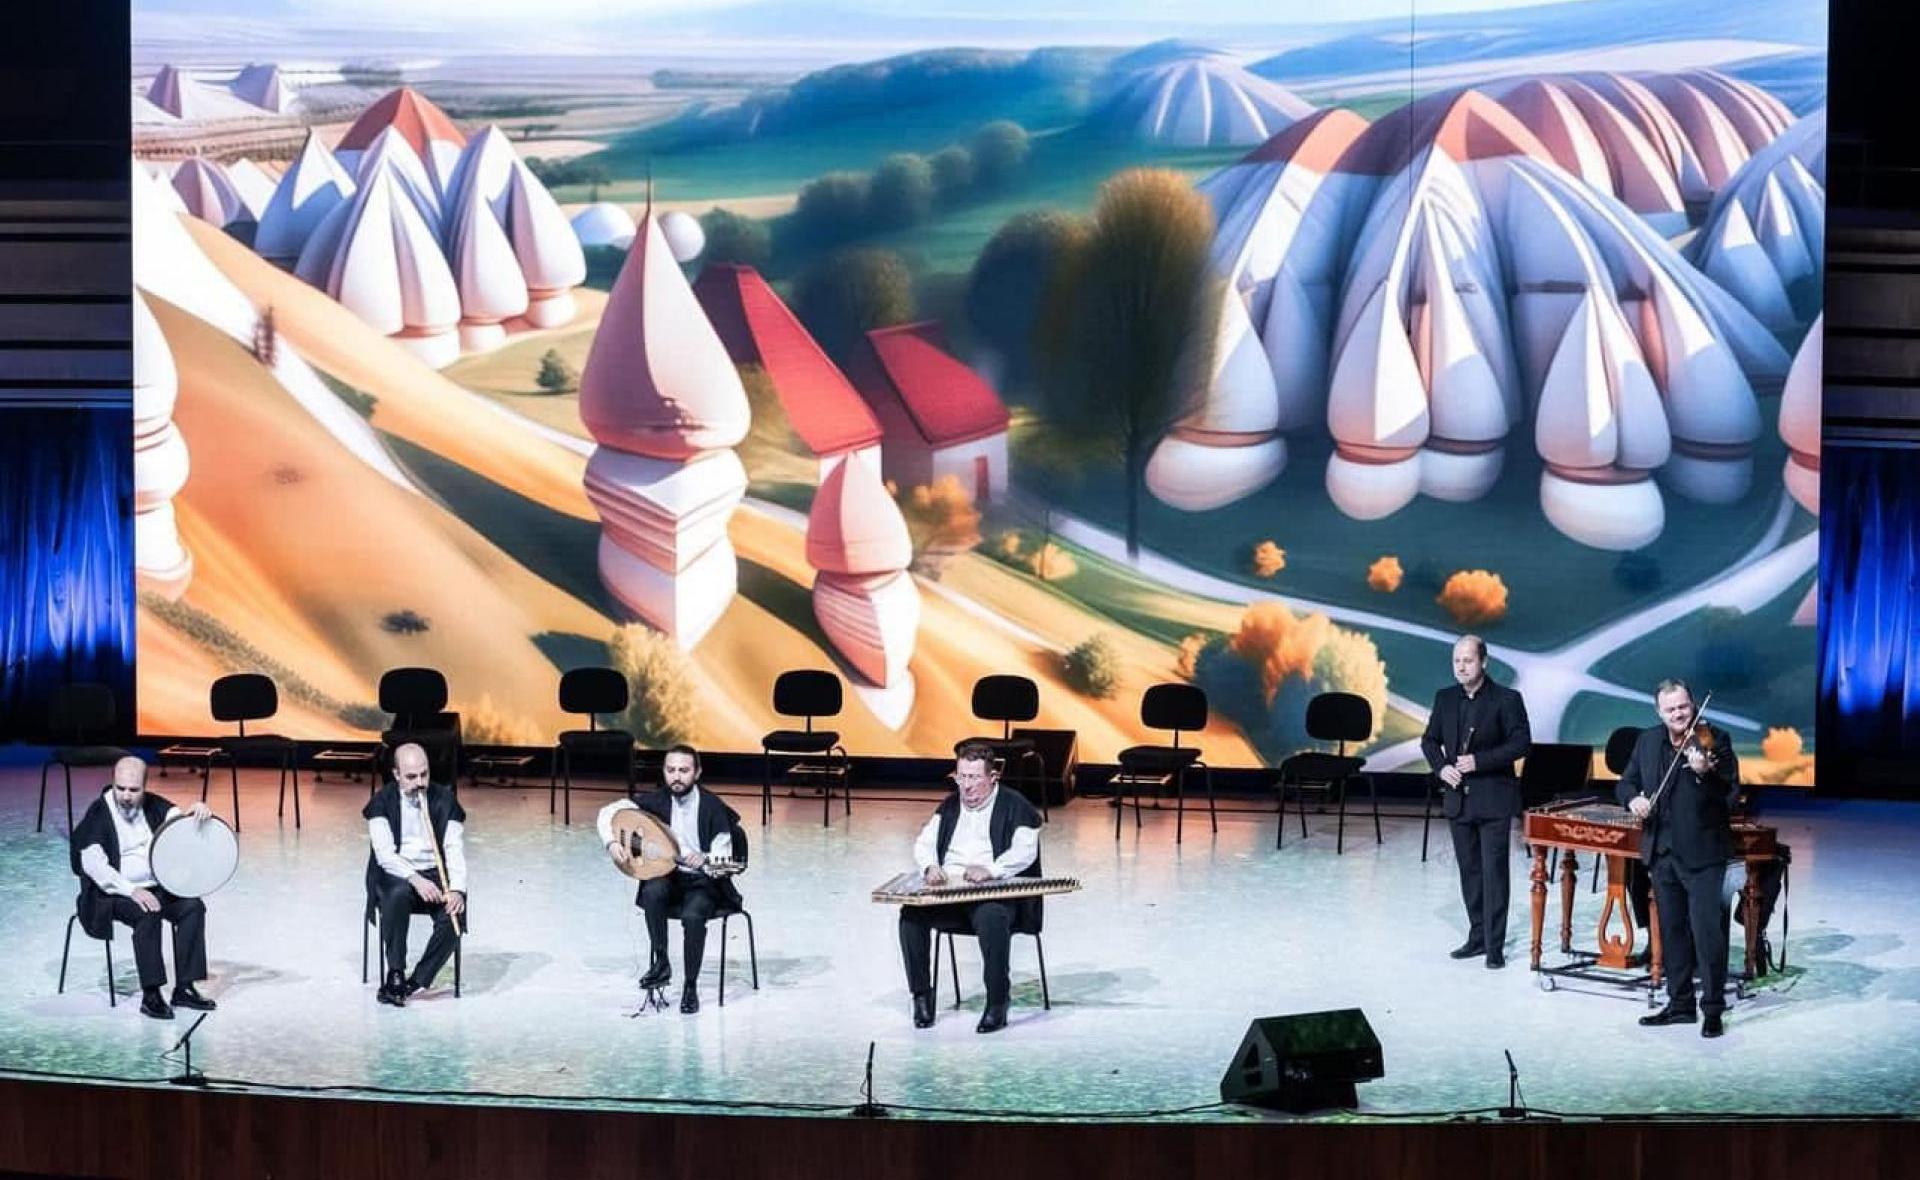 Macar-Türk Kültür Yılı açılış galası Macar Sanatlar Sarayı'nda gerçekleşti